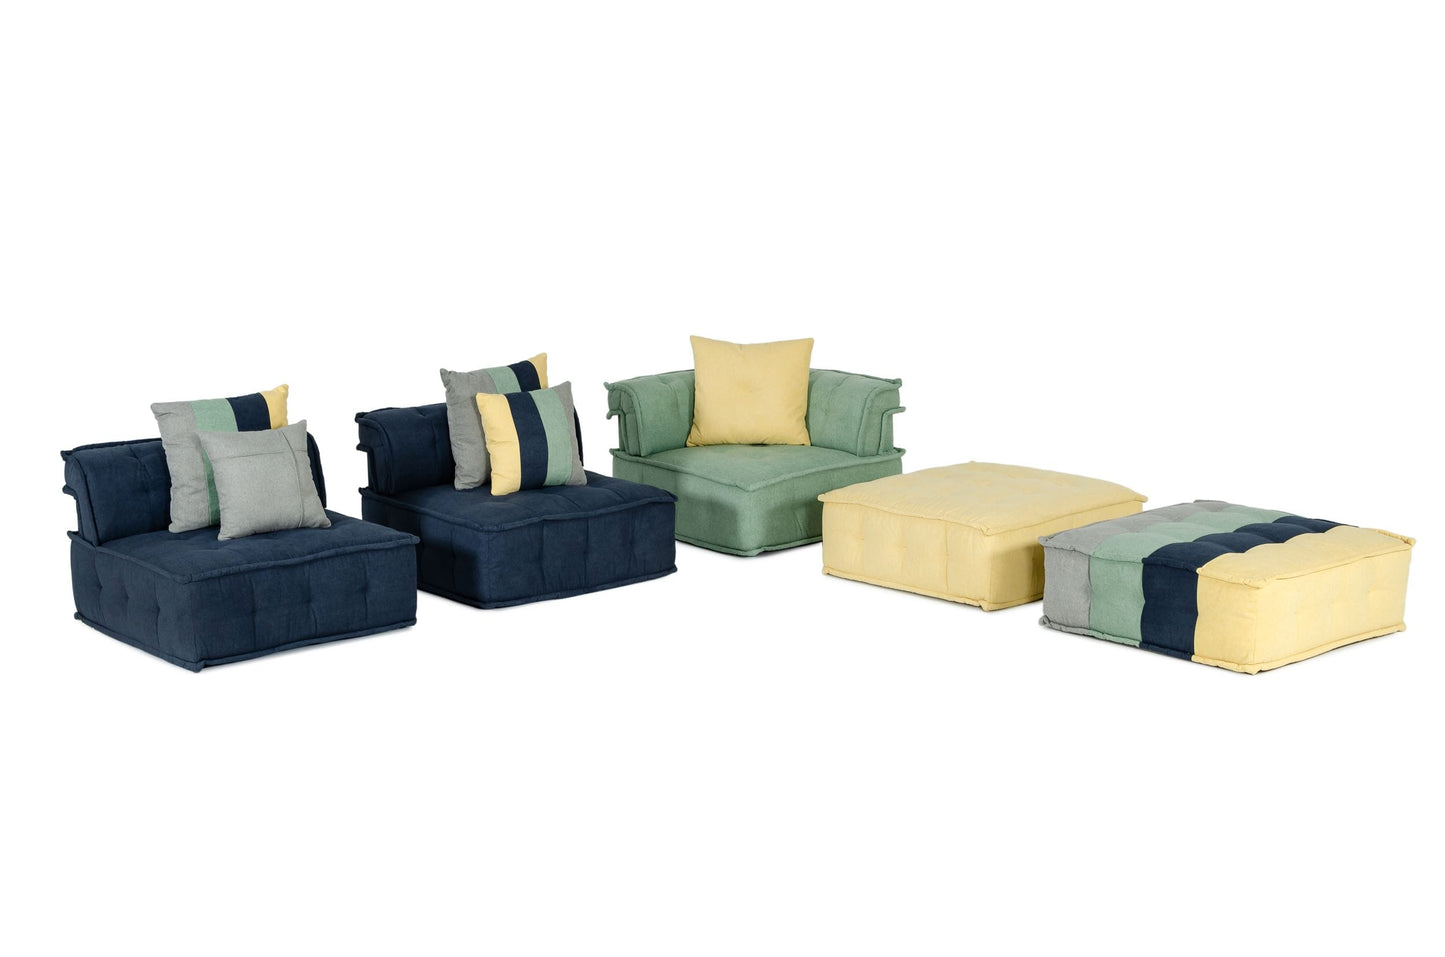 VIG Furniture Divani Casa Dubai Multicolored Fabric Modular Sectional Sofa